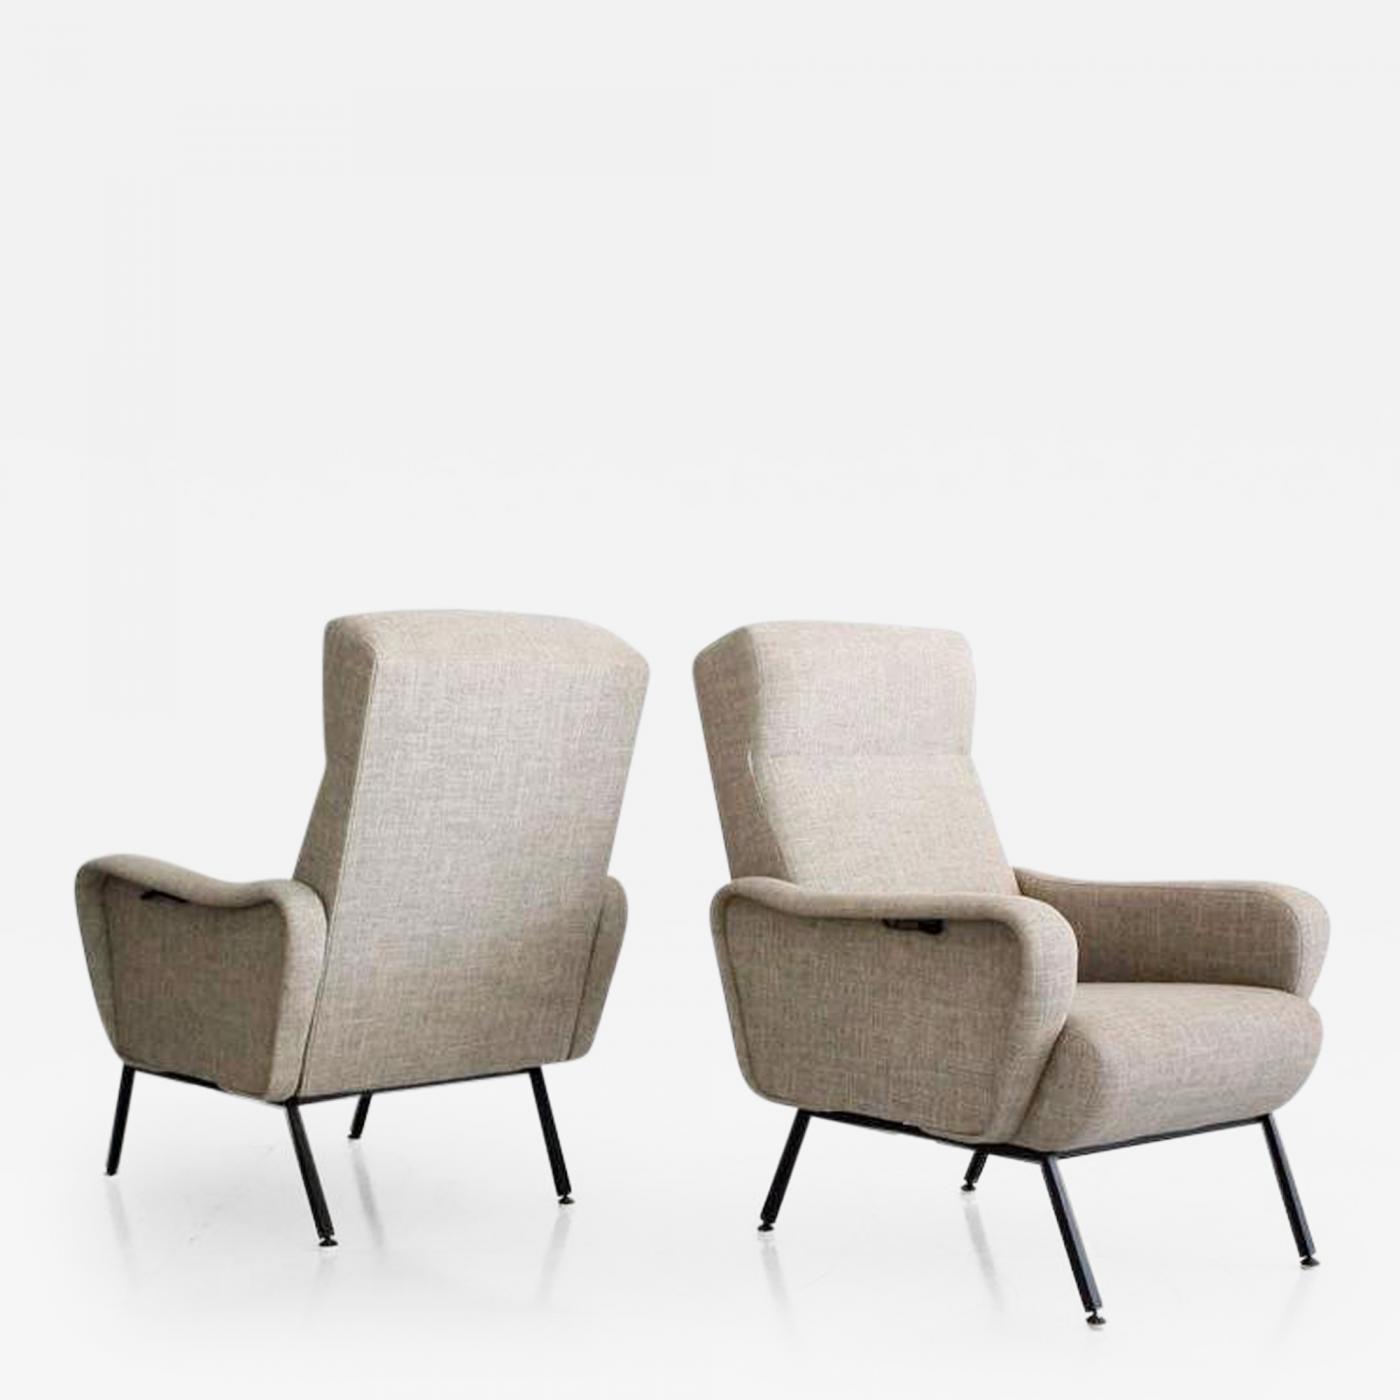 Pair Of Reclining Italian Chairs C 1950s